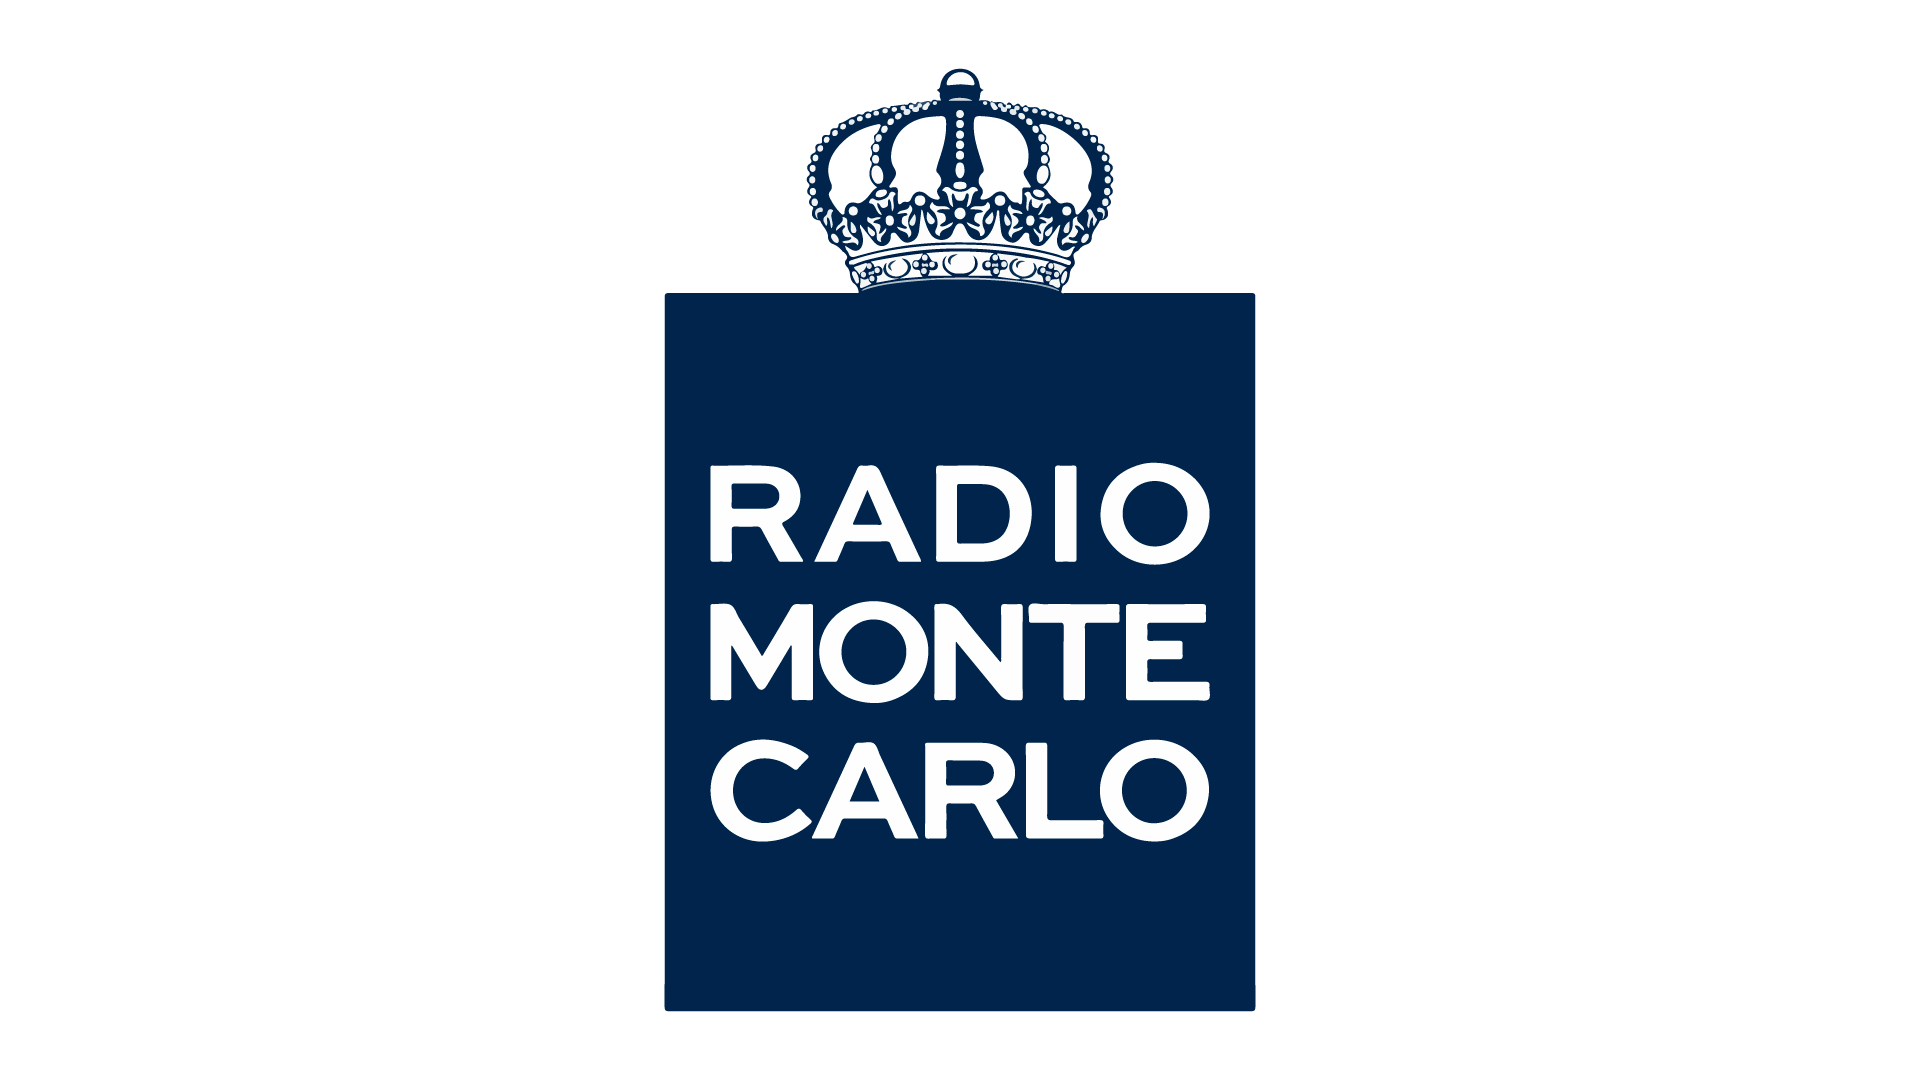 Radio Monte Carlo TV in diretta, live